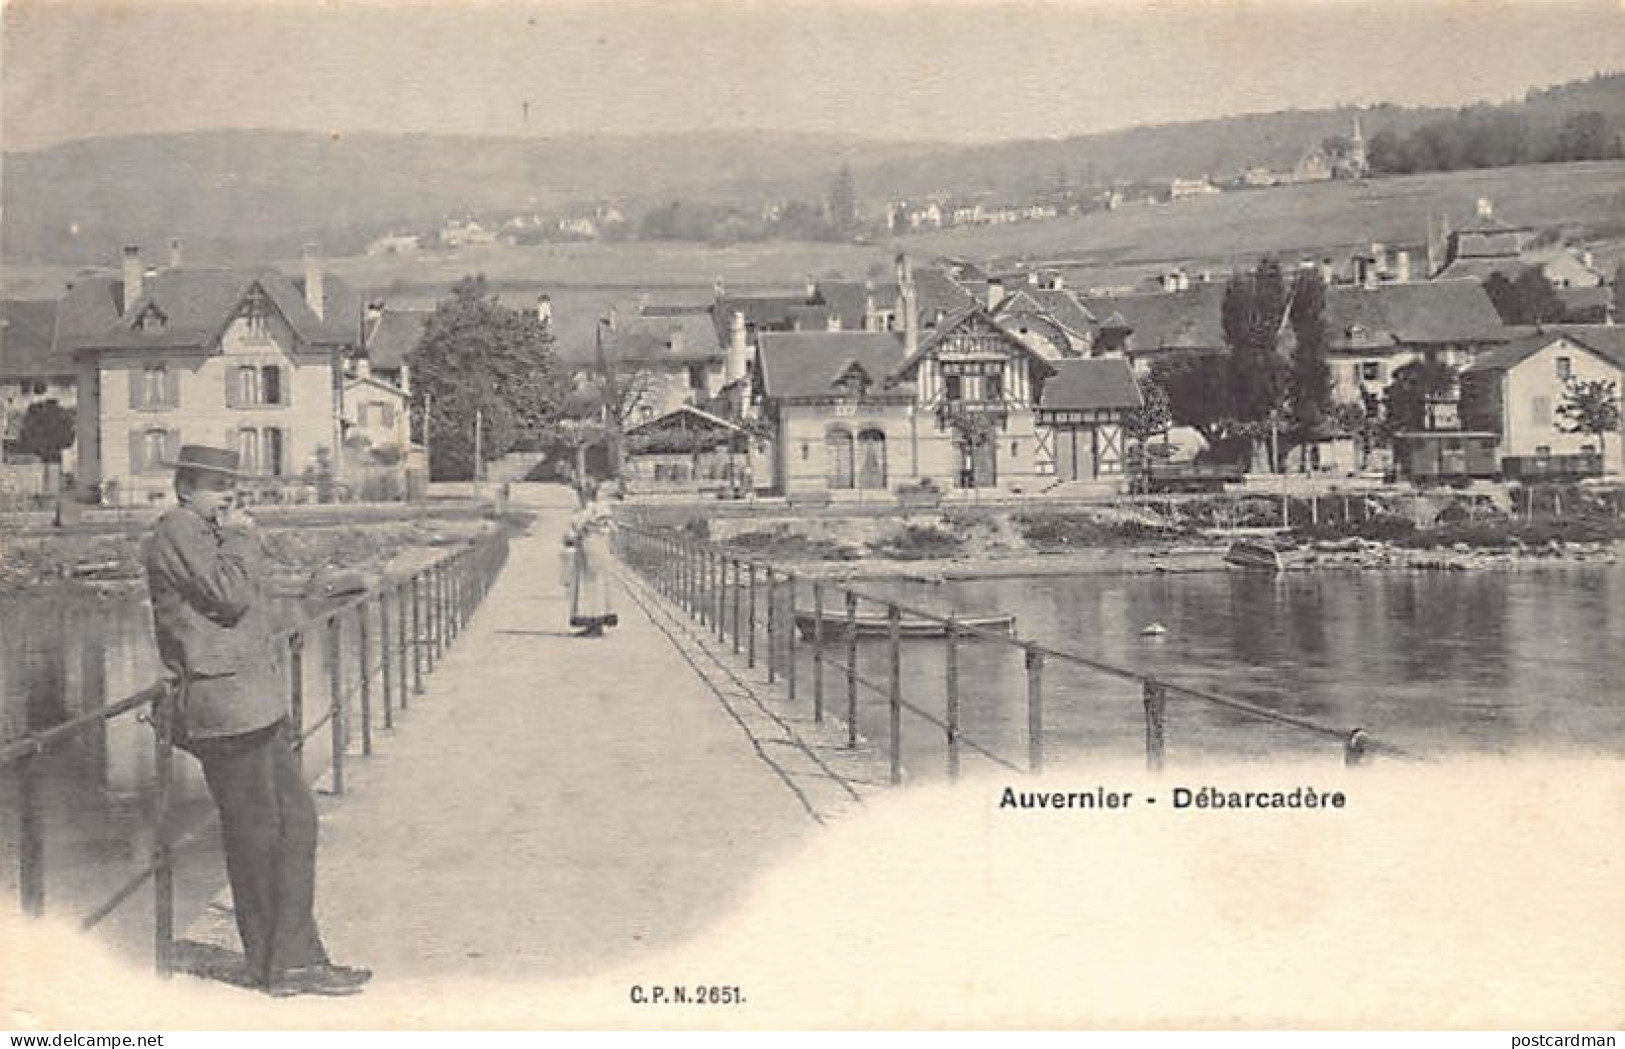 AUVERNIER (NE) Débarcadère - Ed. C.P.N. 2651 - Auvernier